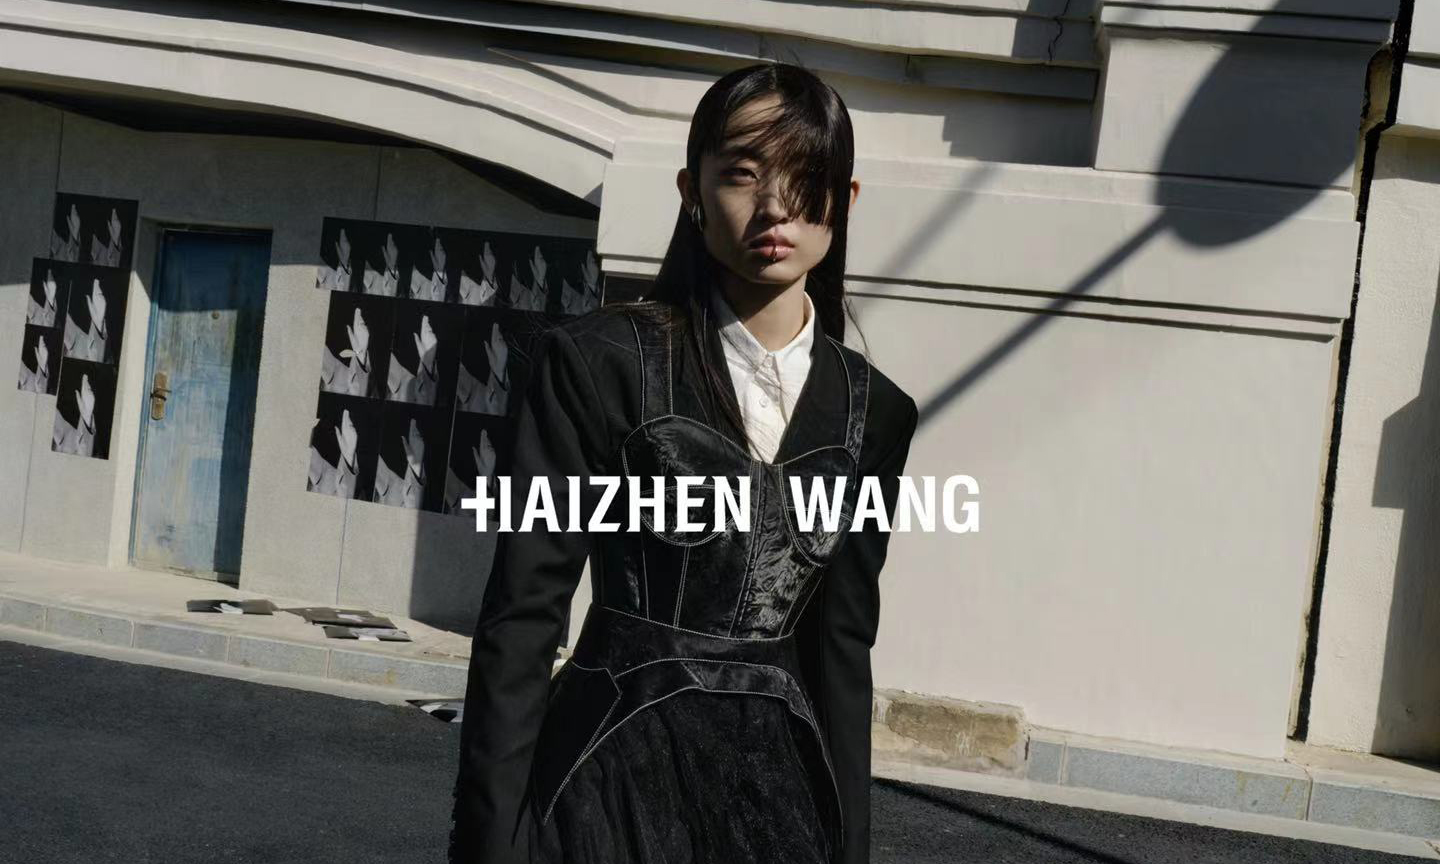 设计师品牌 HAIZHEN WANG 释出 2021 春夏系列广告大片